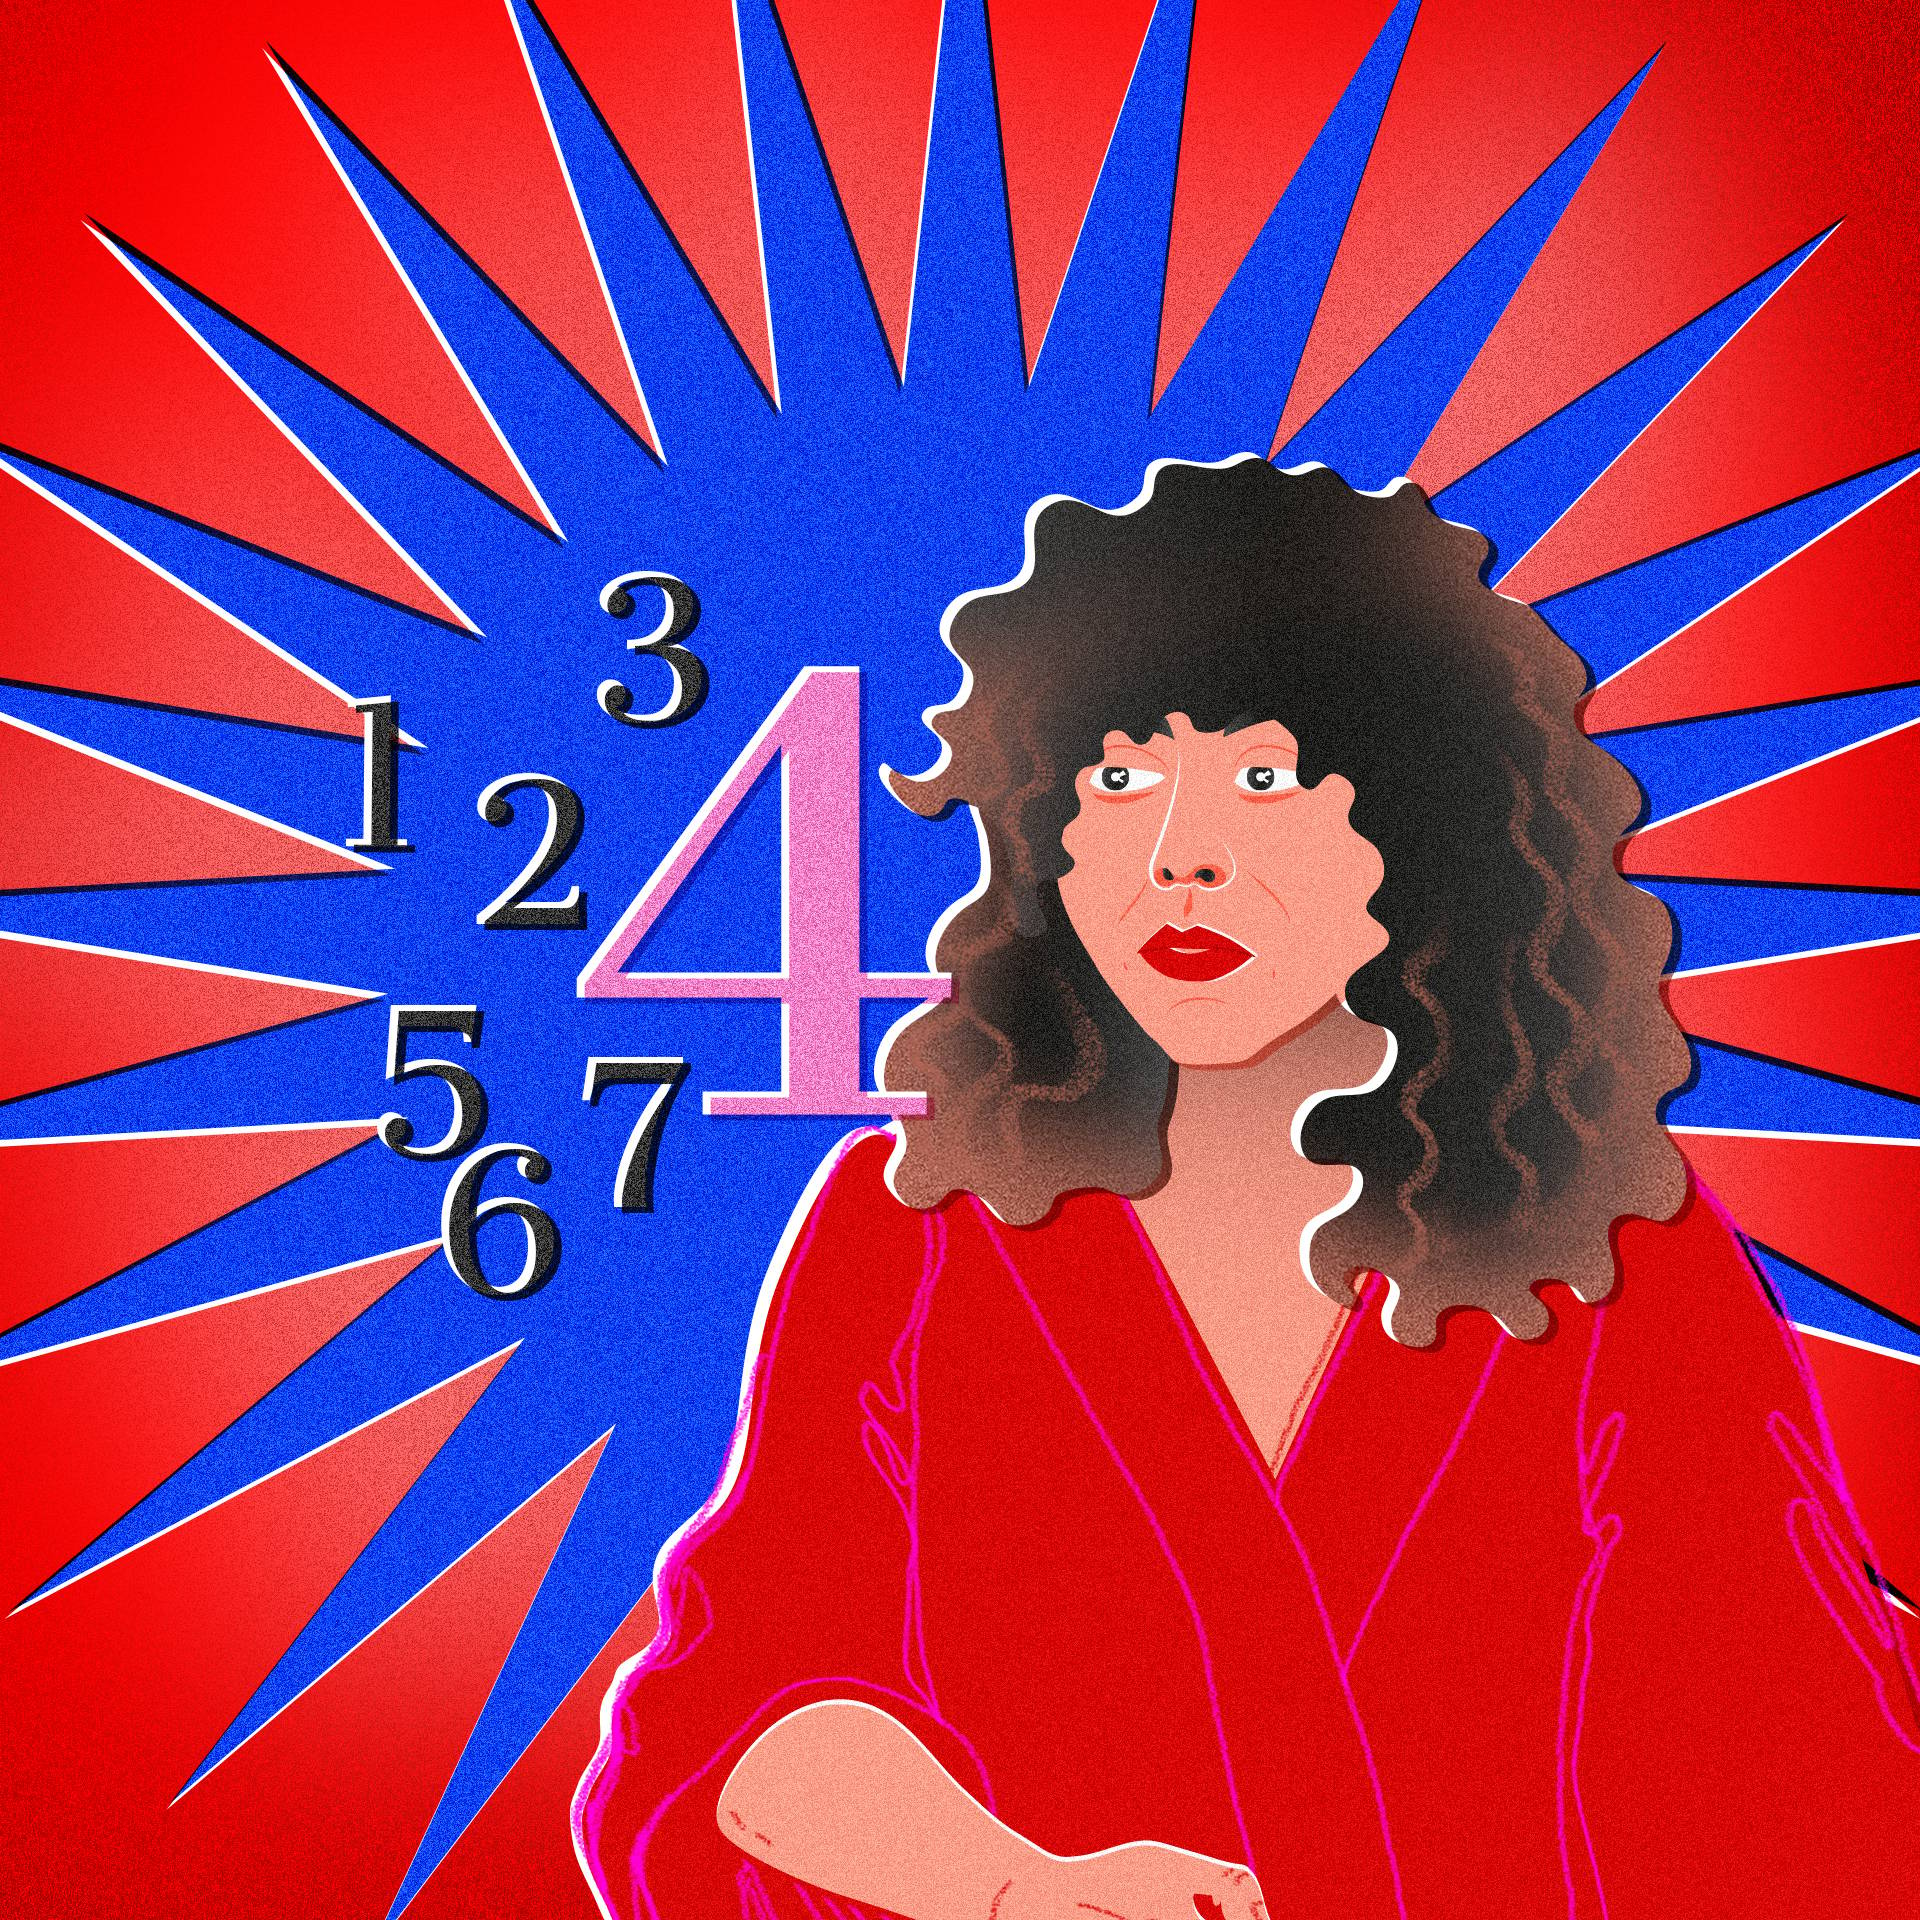 Niebiesko-czerwona grafika z wizerunkiem kobiety o kręconych włosach (Agnieszki Szpili) i cyframi od 1 do 7, gdzie wyróżniona jest cyfra 4